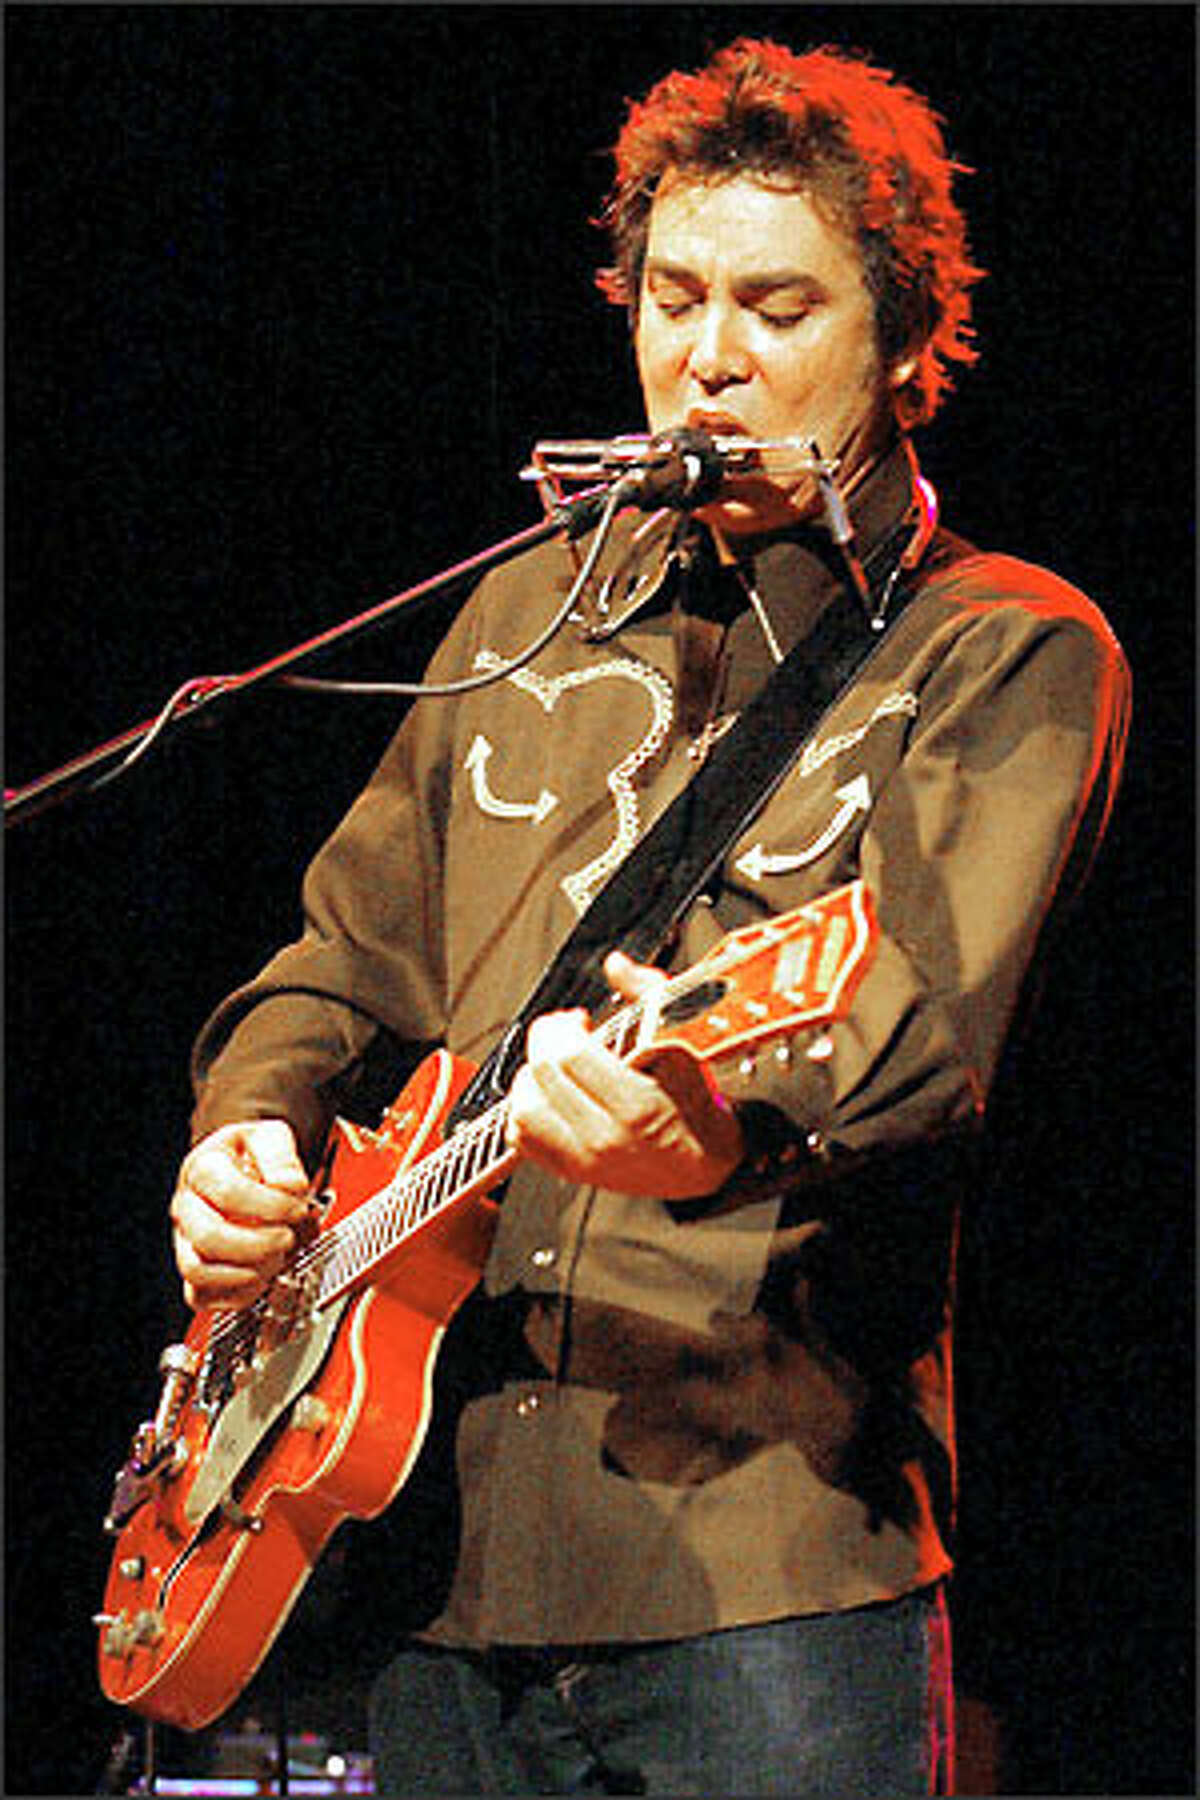 Lucinda Williams' guitarist, Doug Pettibone.